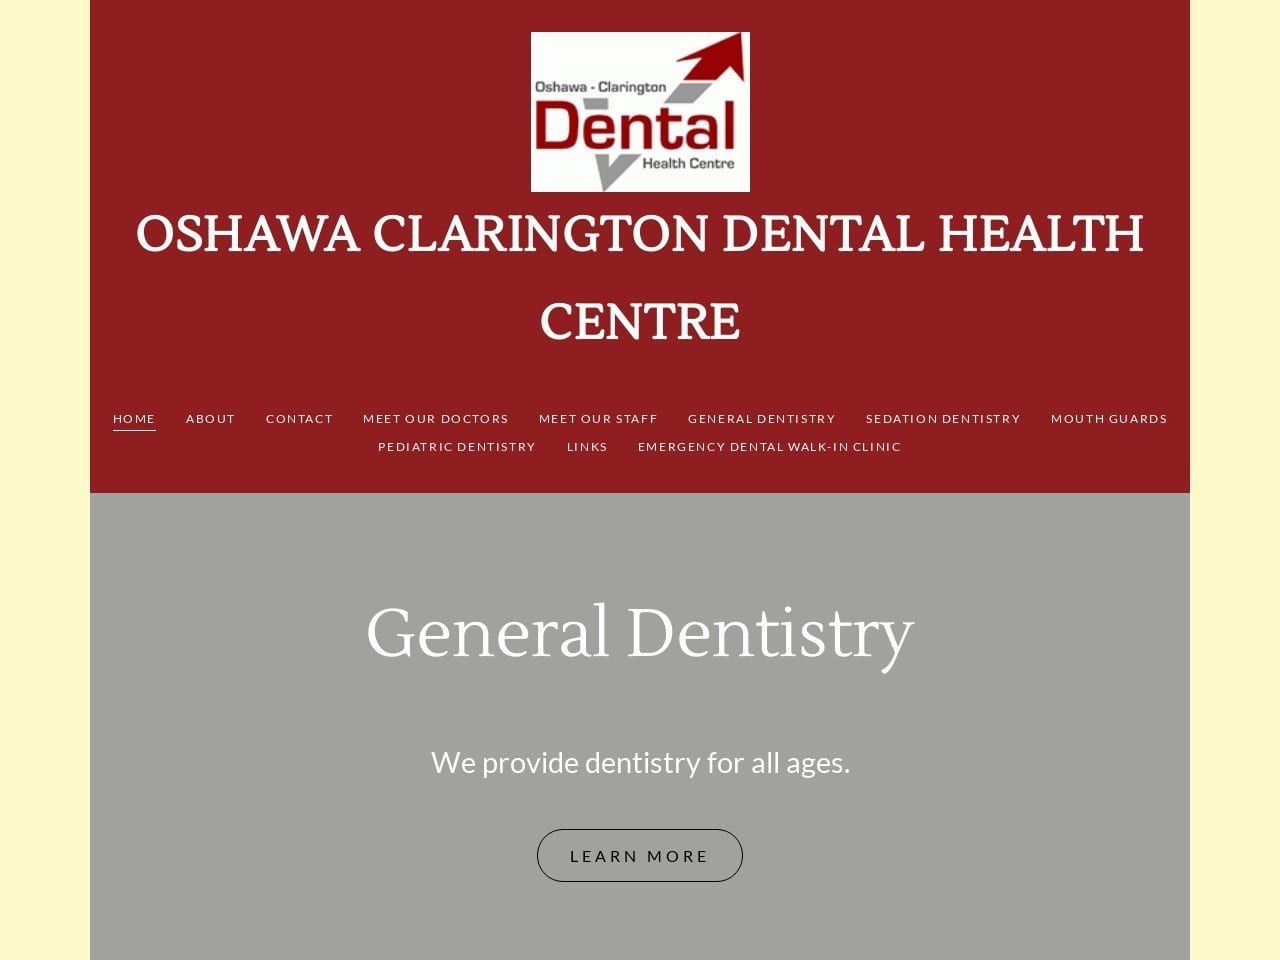 Oshawaclarington Dental Healthcentre Website Screenshot from oshawaclaringtondentalhealthcentre.com